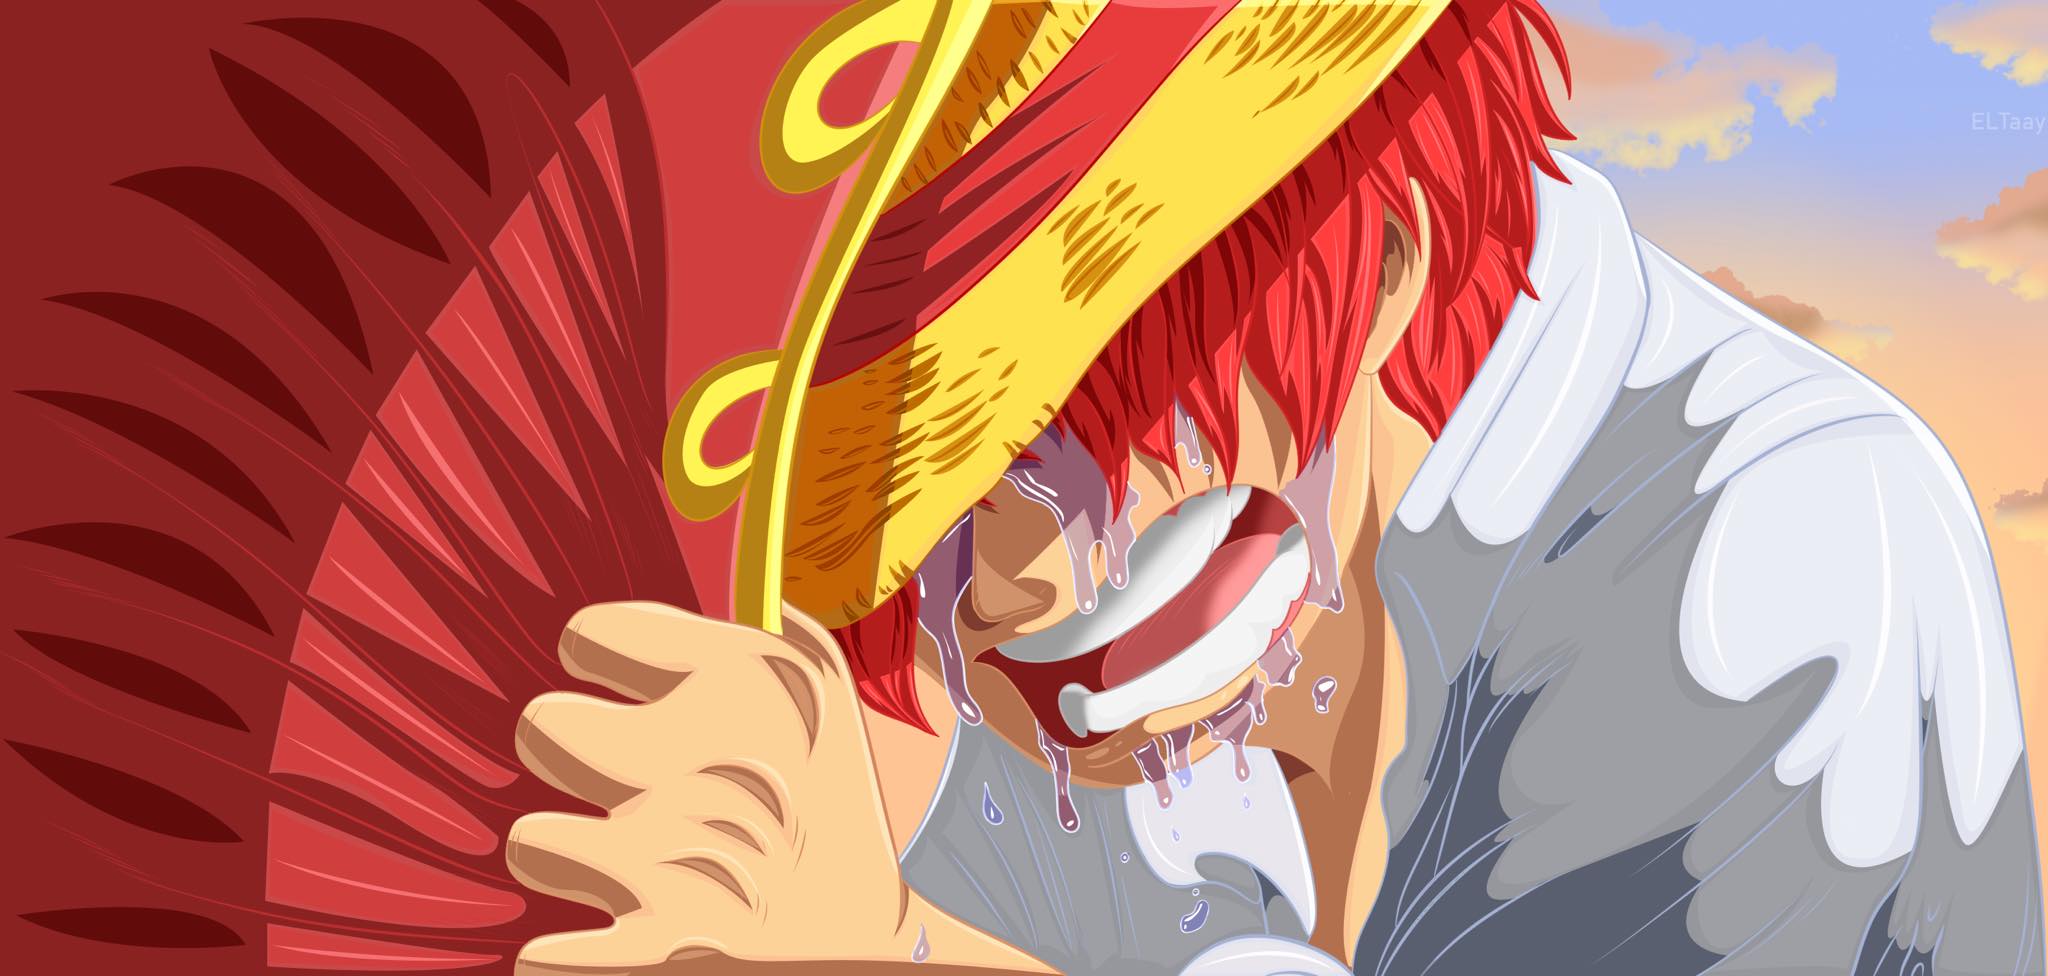 Nếu bạn yêu thích One Piece, không thể bỏ qua Shanks Tóc Đỏ - một trong những nhân vật đầy sức mạnh và bí ẩn nhất trong anime này. Hãy xem hình ảnh liên quan để cùng khám phá thêm về Shanks và tóc đỏ đầy huyền thoại của anh ta.